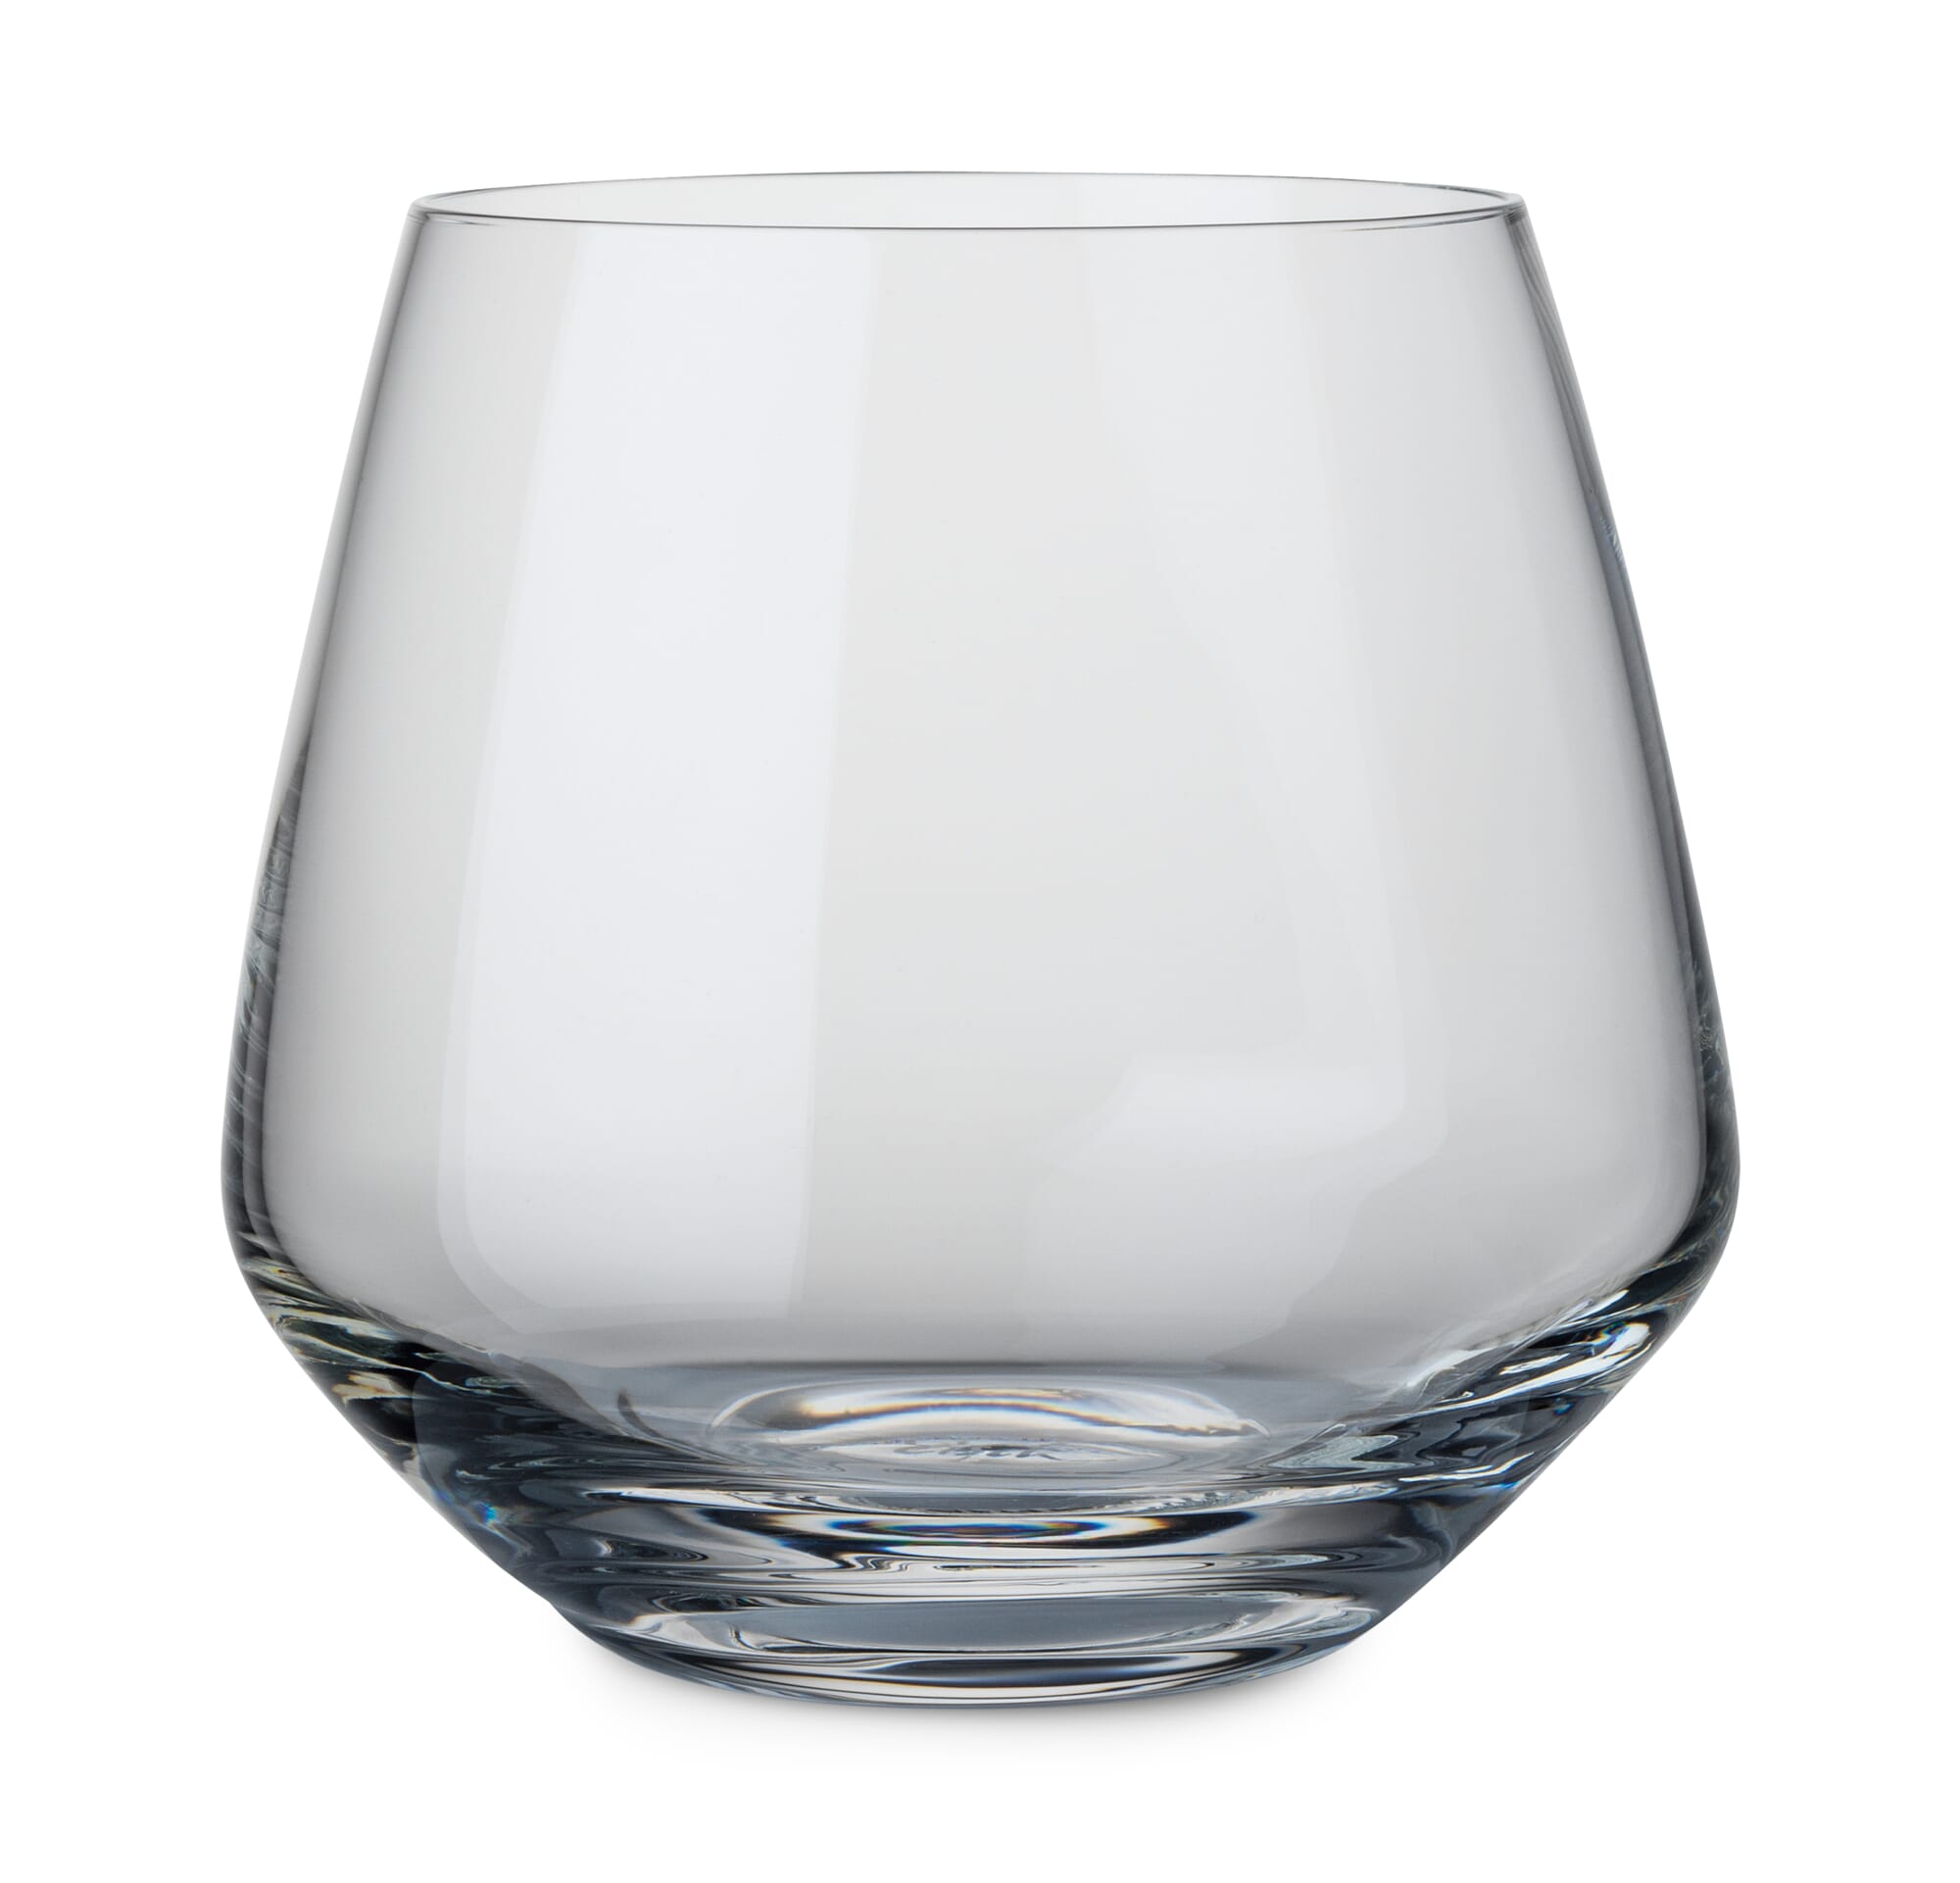 Vergelijking Onheil hardop Eisch Whiskyglas, 2 stuks in doos | Manufactum